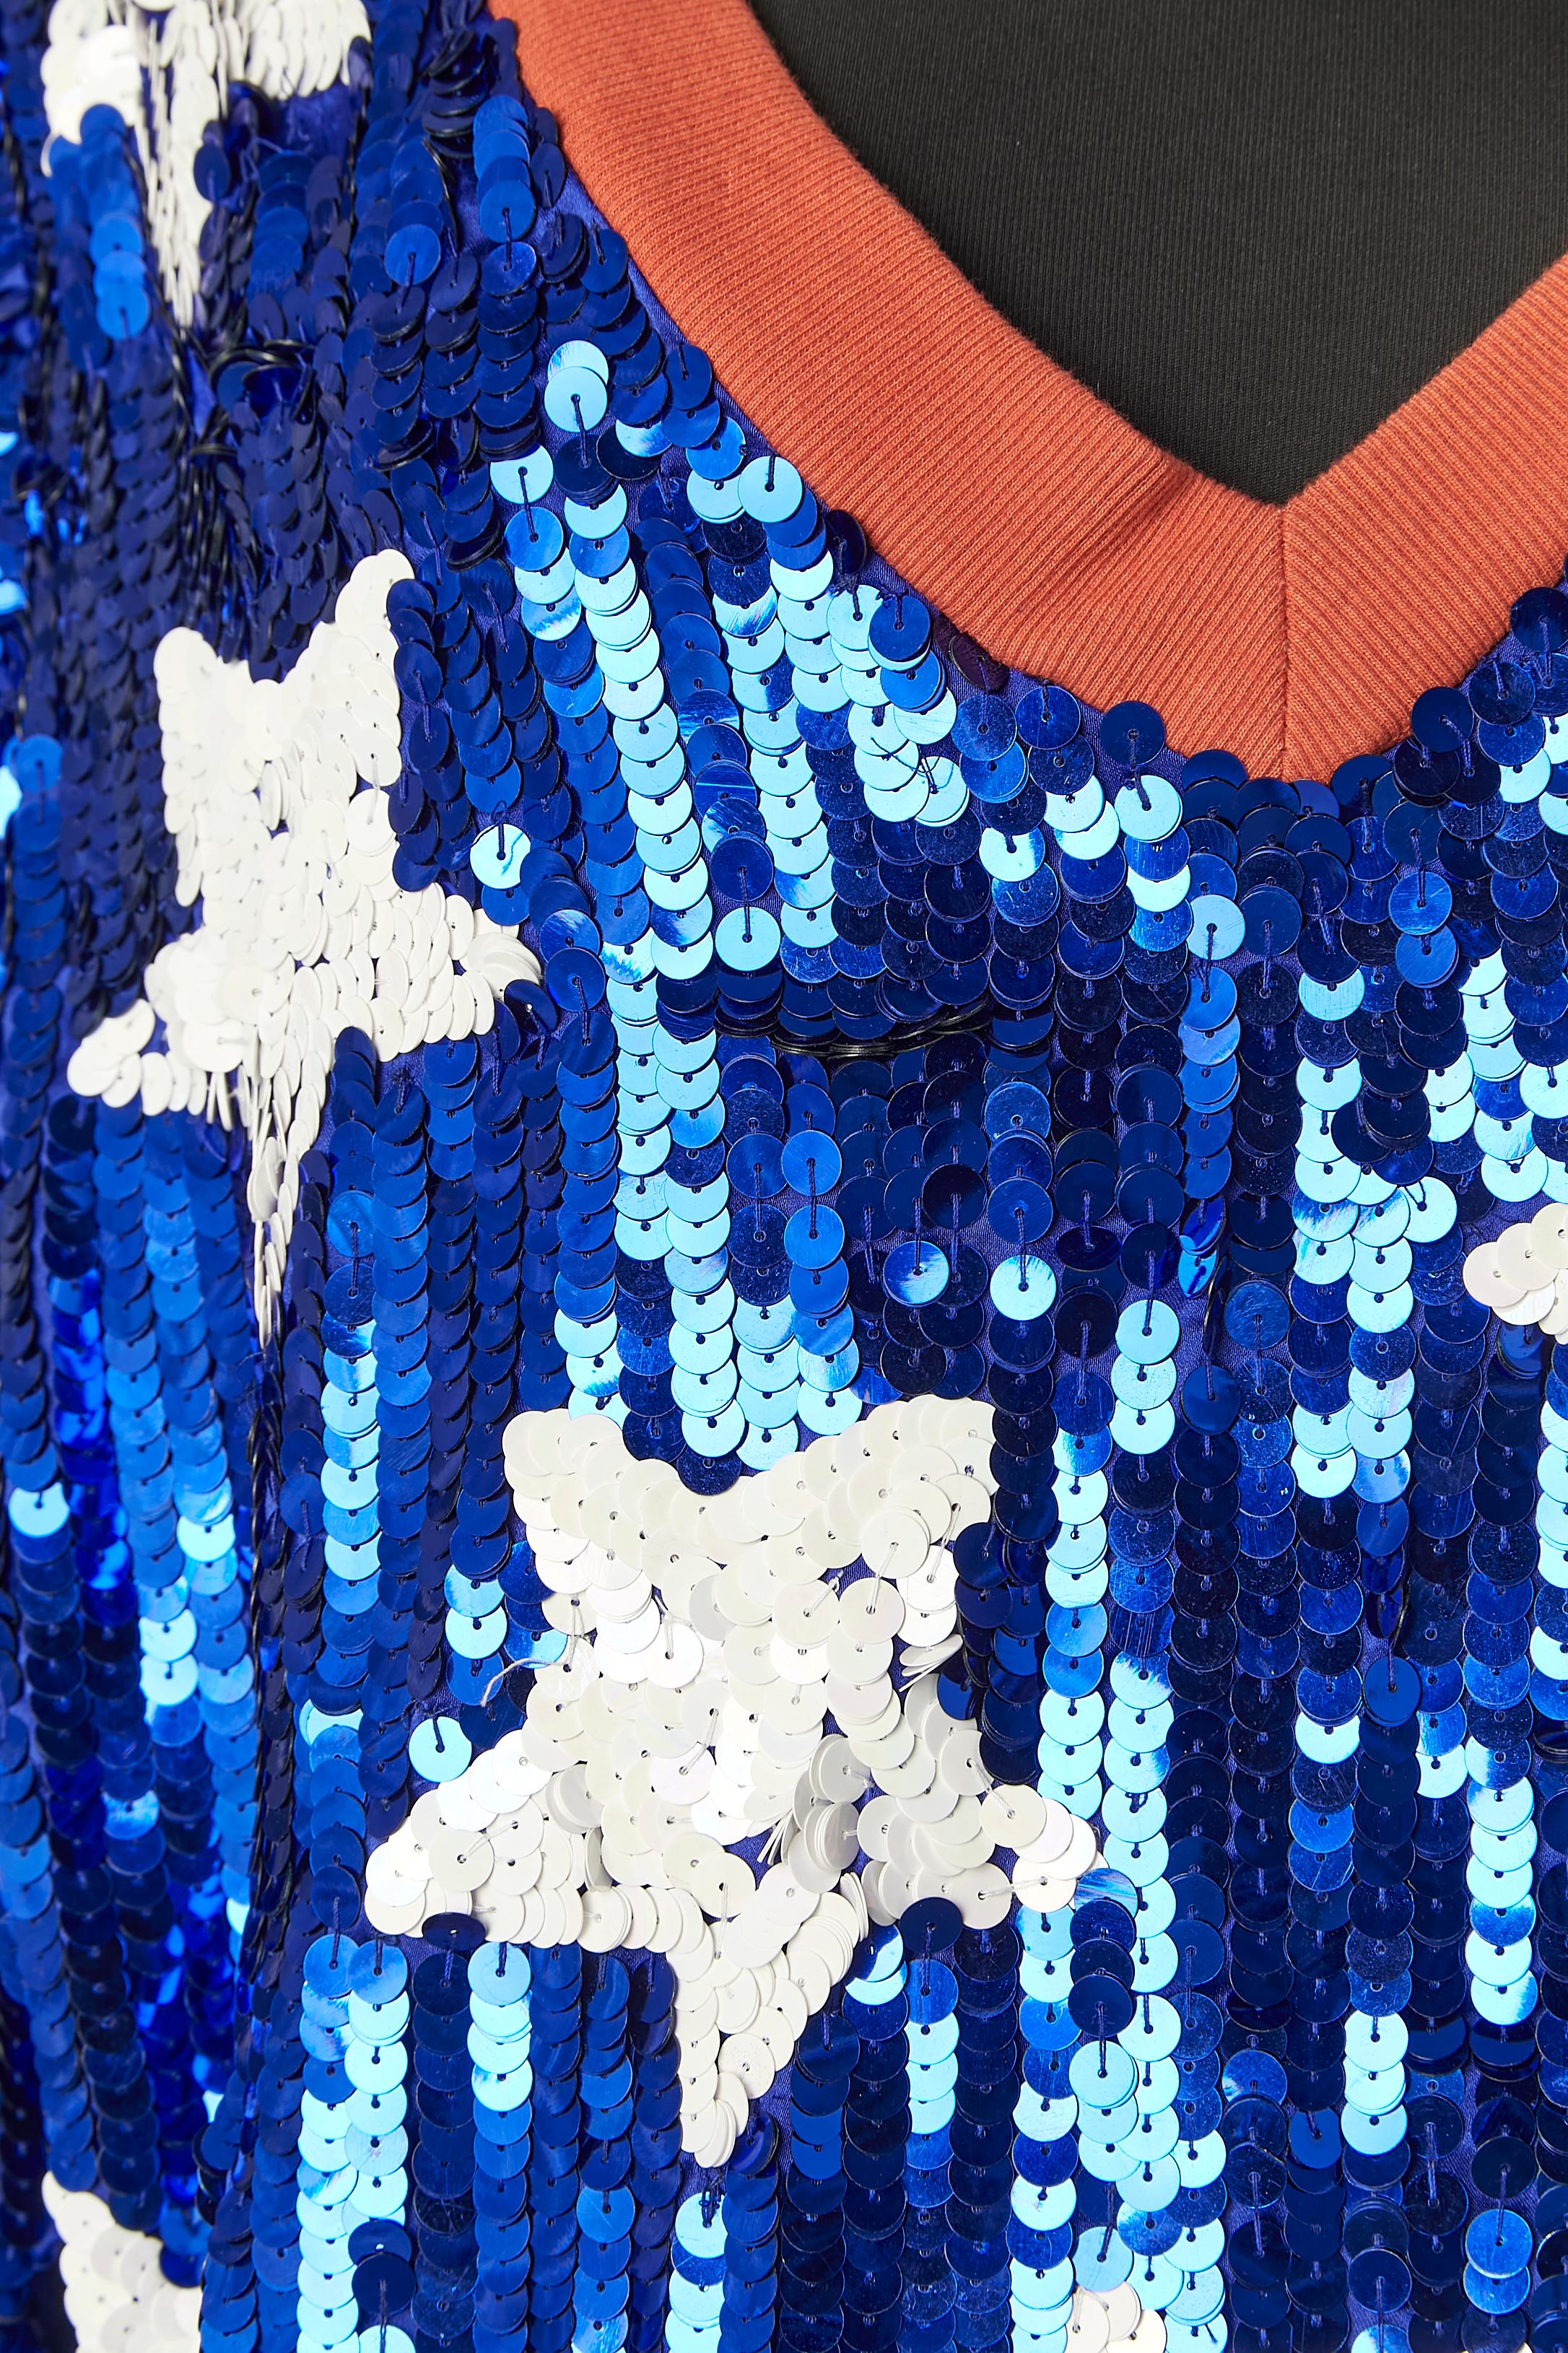 Blaues Paillettenkleid mit weißem Sternpaillettenmuster . Zusammensetzung des Stoffes: 100% Polyester. Die Rückseite ist aus einfachem Polyester-Satin. Orangefarbenes Baumwollband am Halsausschnitt, am unteren Rand und am Ärmelrand 
GRÖSSE 40 / L 